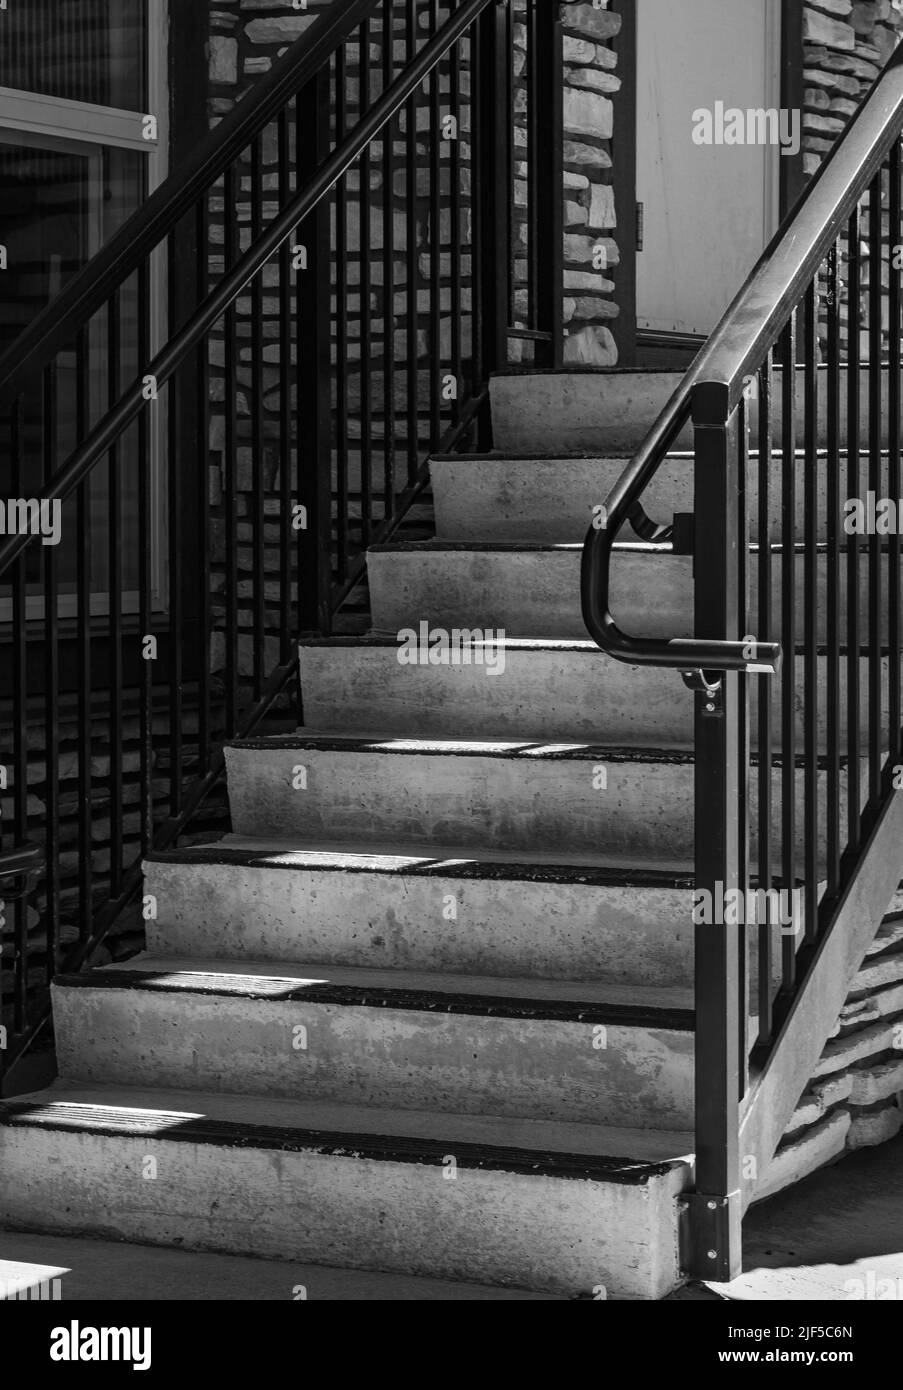 Escalier et lumière du soleil. Entrée du bâtiment. Éléments rambarde d'une maison. Marchepied avec main courante en acier. Personne, photo de rue, photo abstraite Banque D'Images